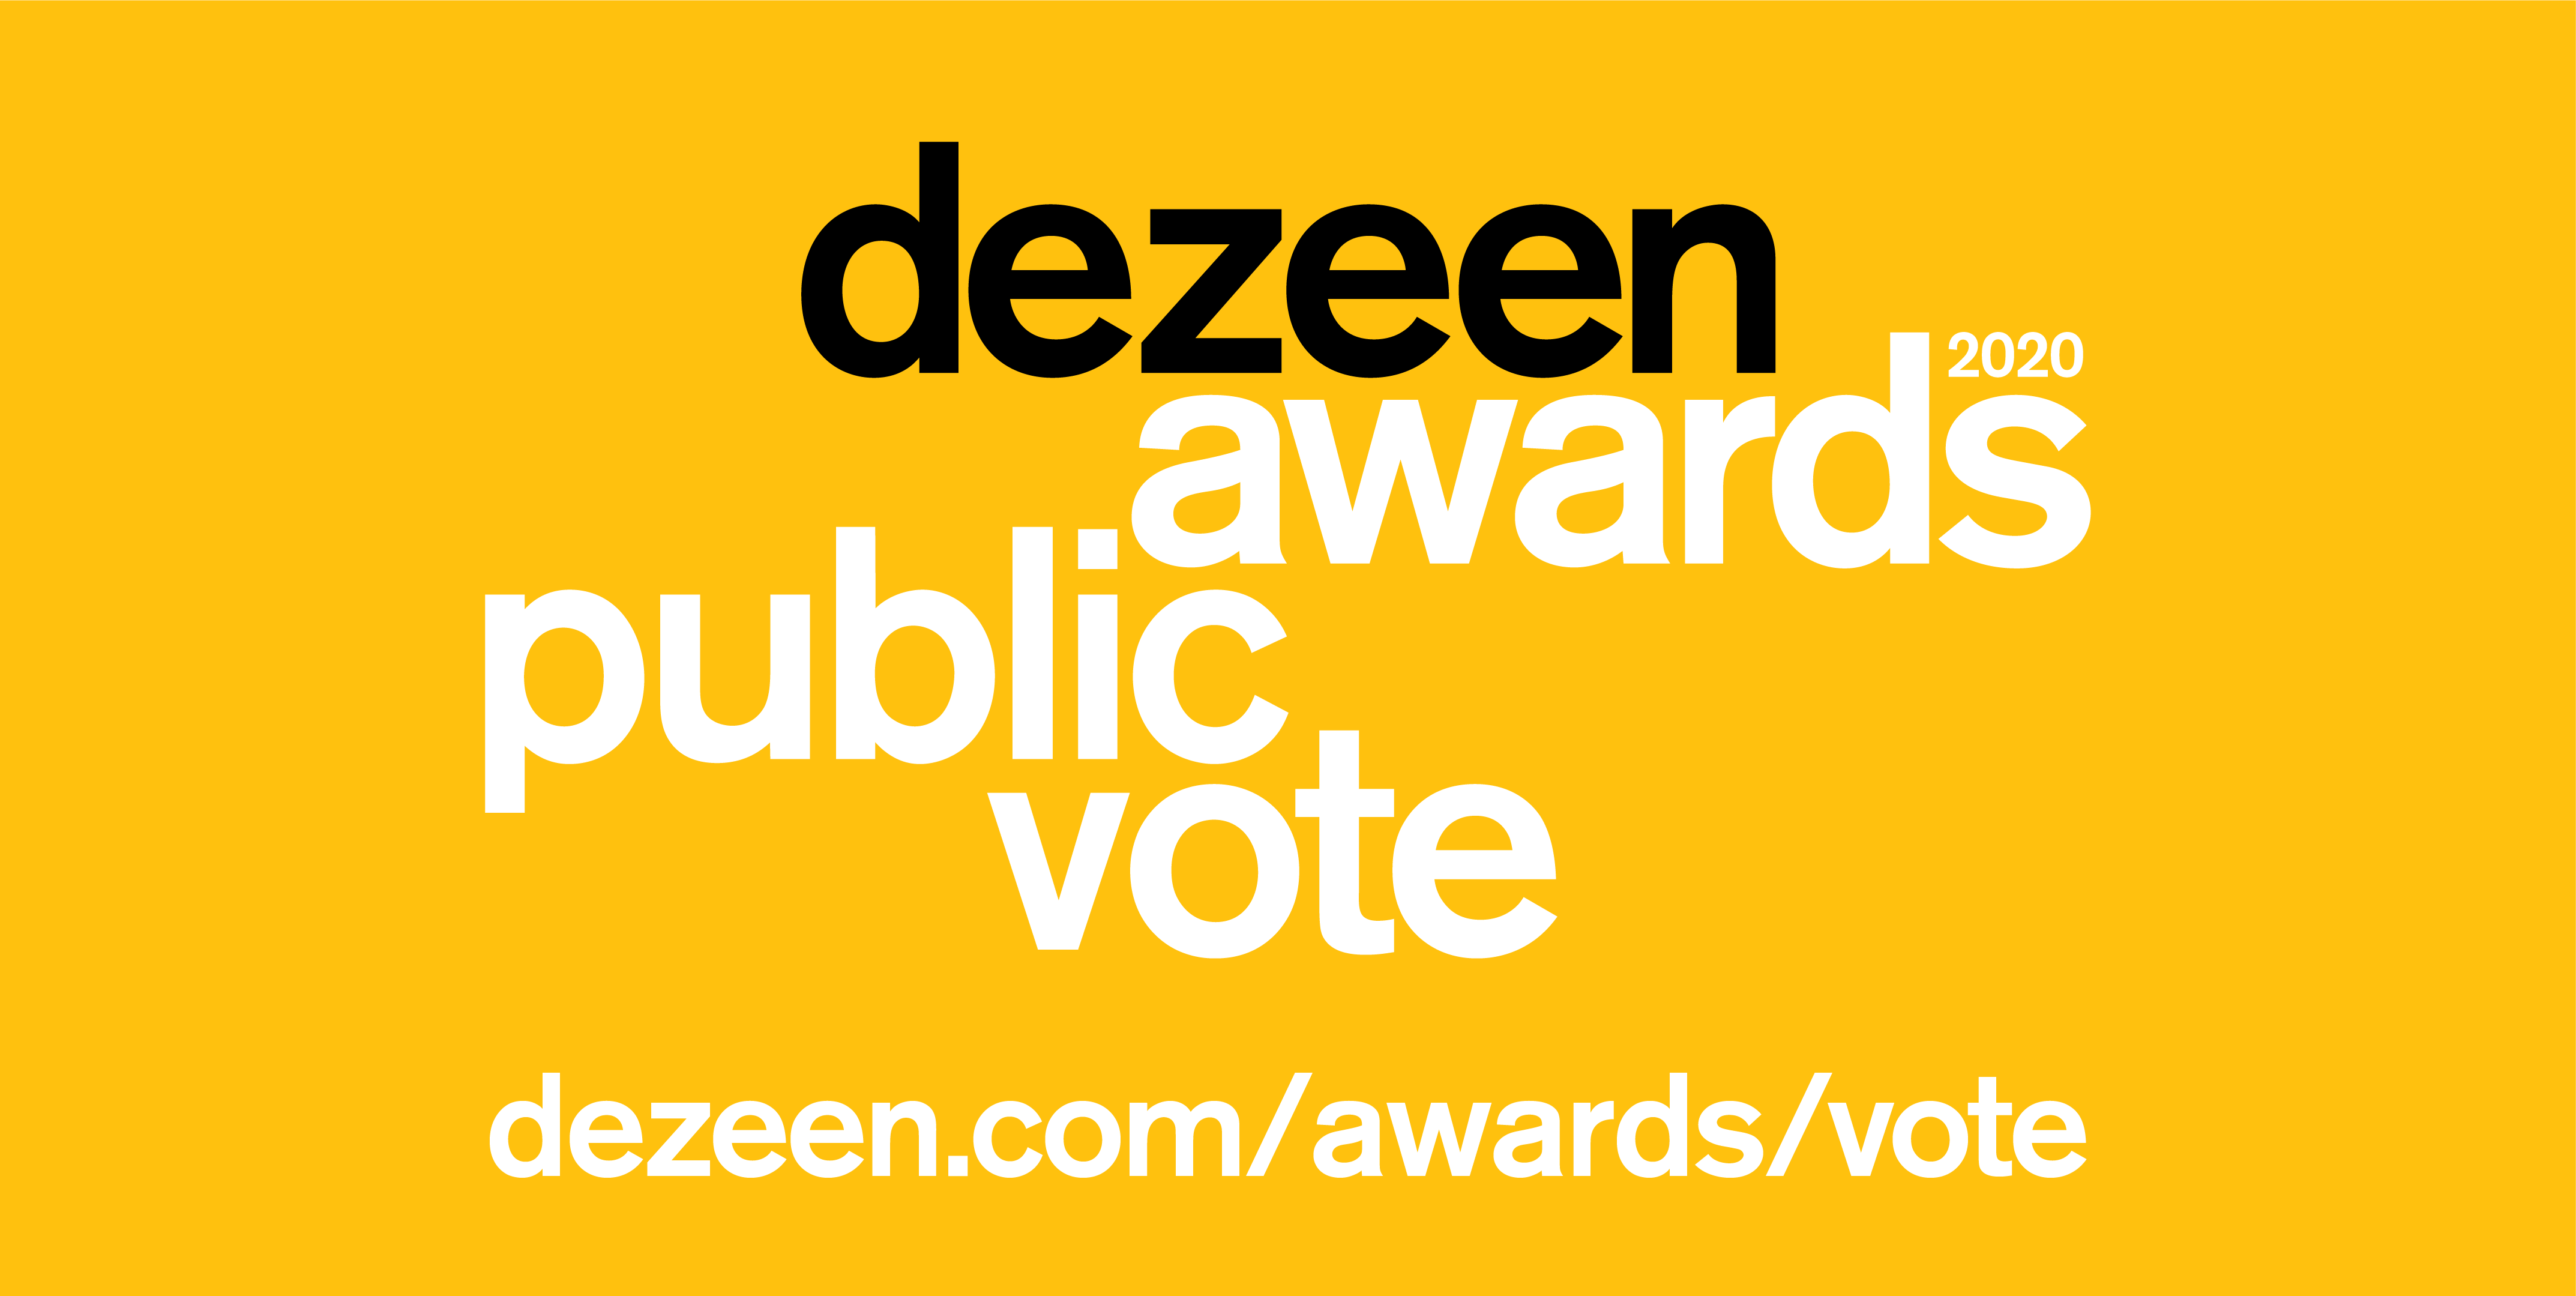 https://static.dezeen.com/uploads/2020/09/Dezeen-Awards-2020-public-vote-rectangle1-1.png